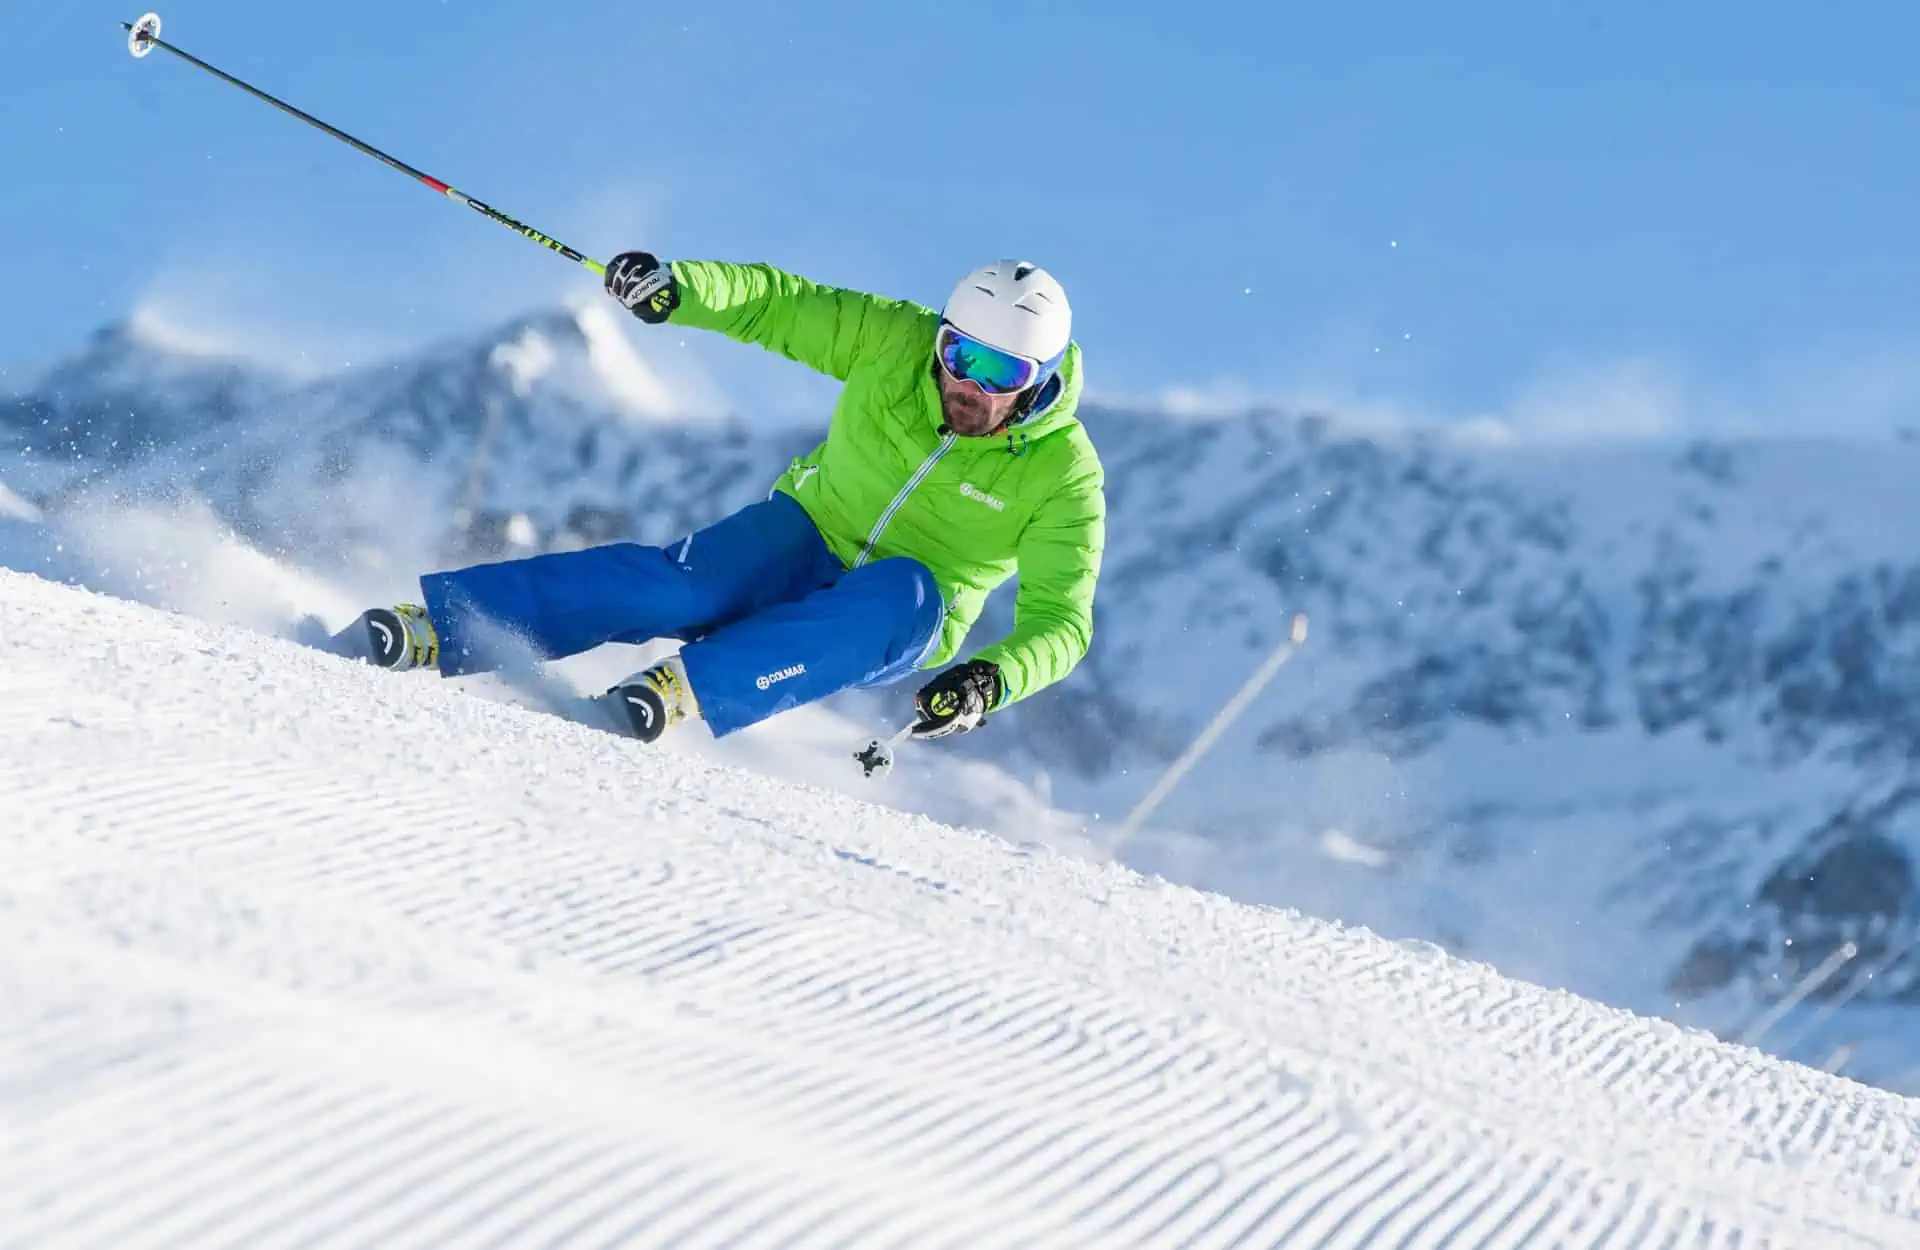 Skieur - Laurent_Salino - OT de l'Alpe d'Huez